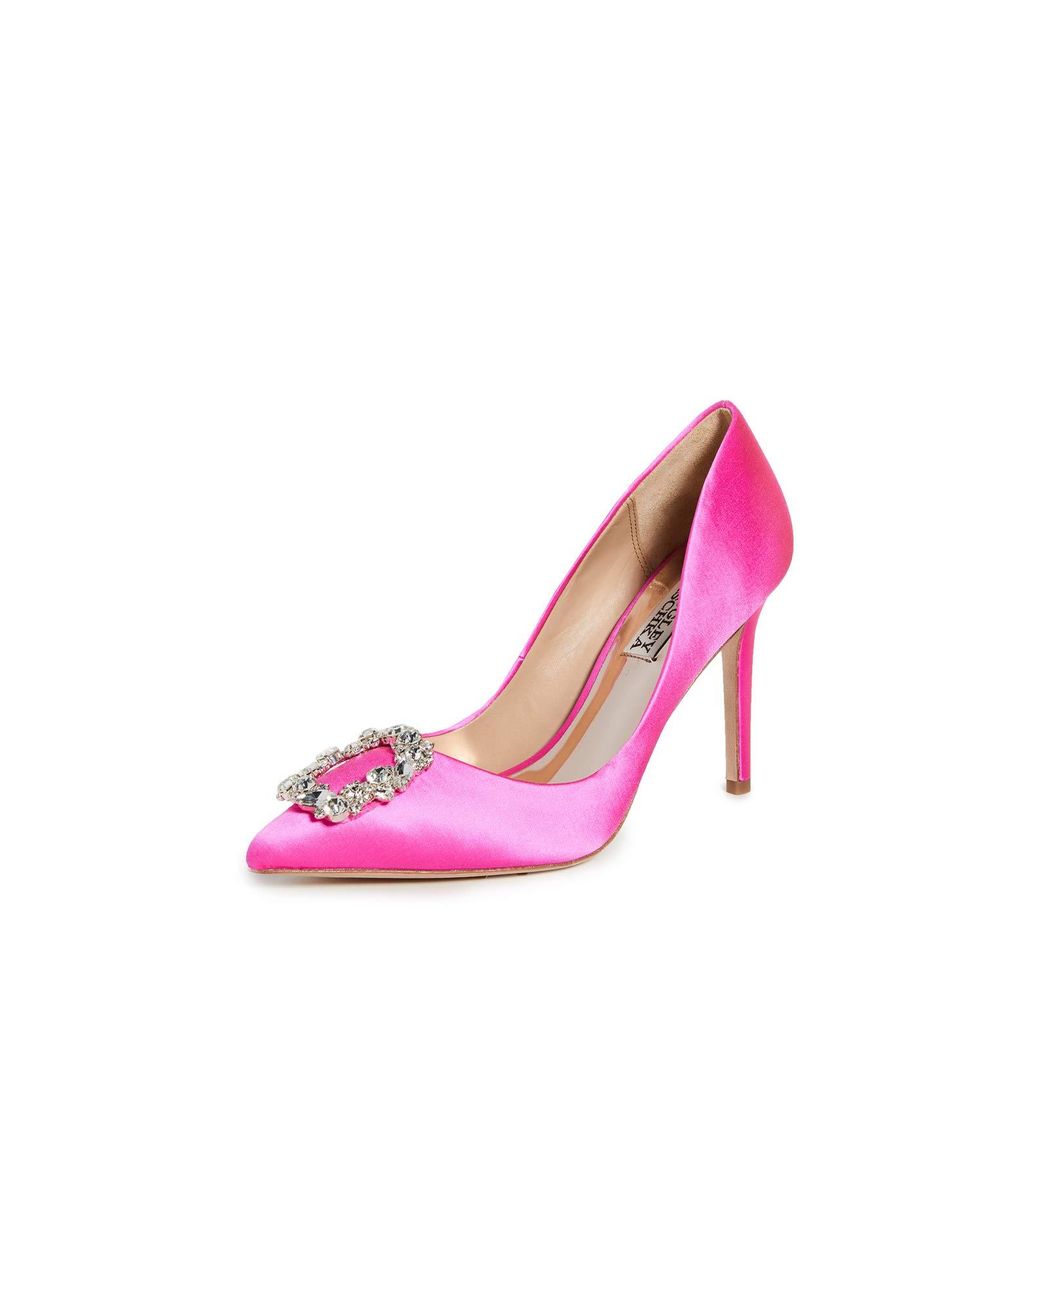 Badgley Mischka Cher Pump in Hot Pink (Pink) - Lyst